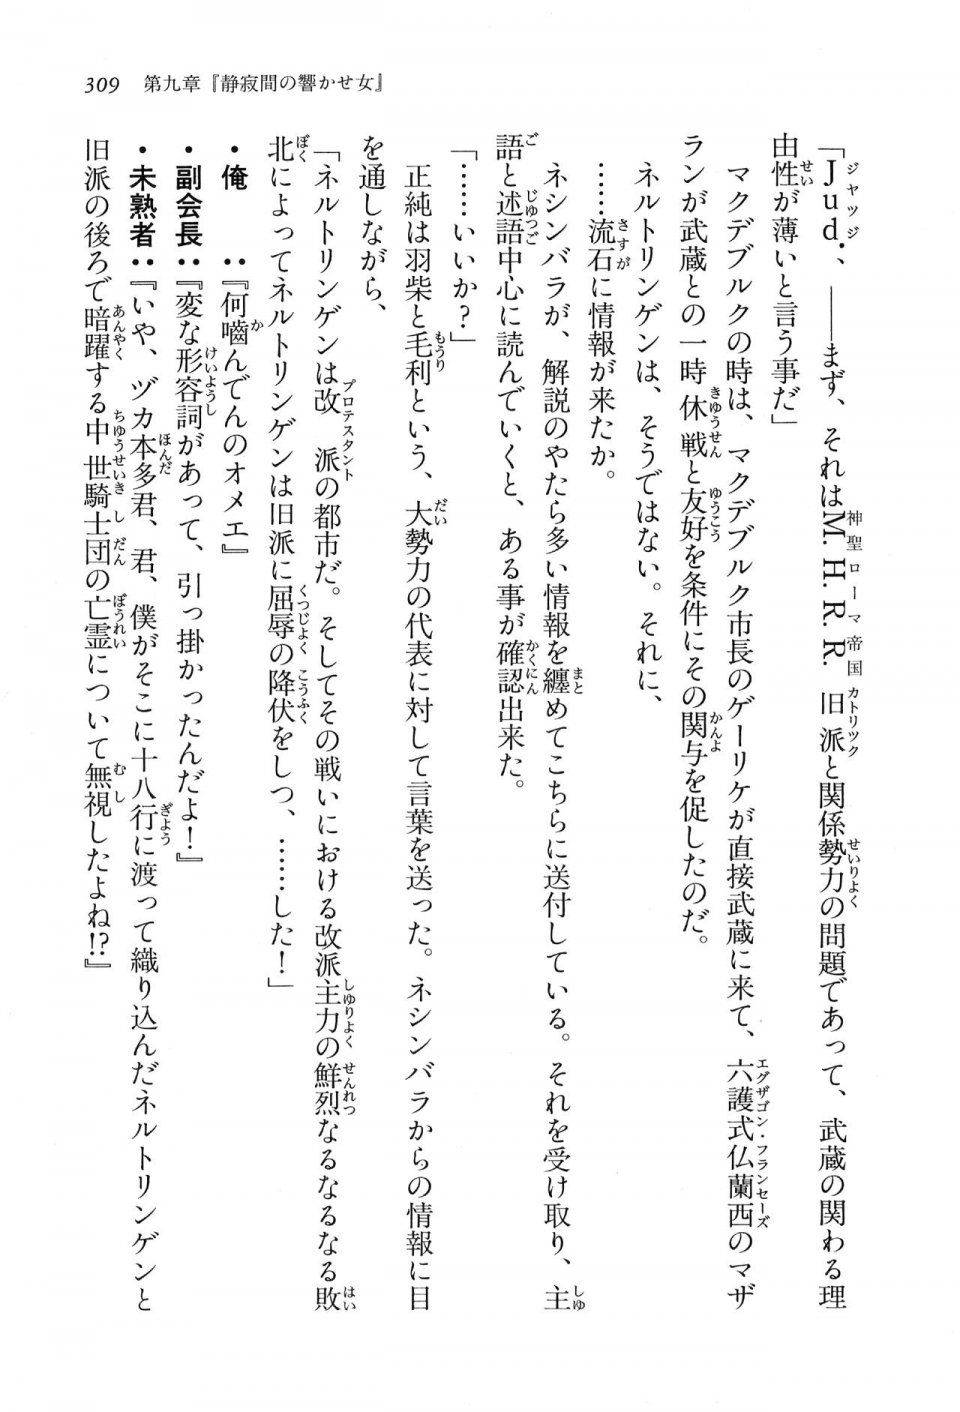 Kyoukai Senjou no Horizon LN Vol 16(7A) - Photo #309